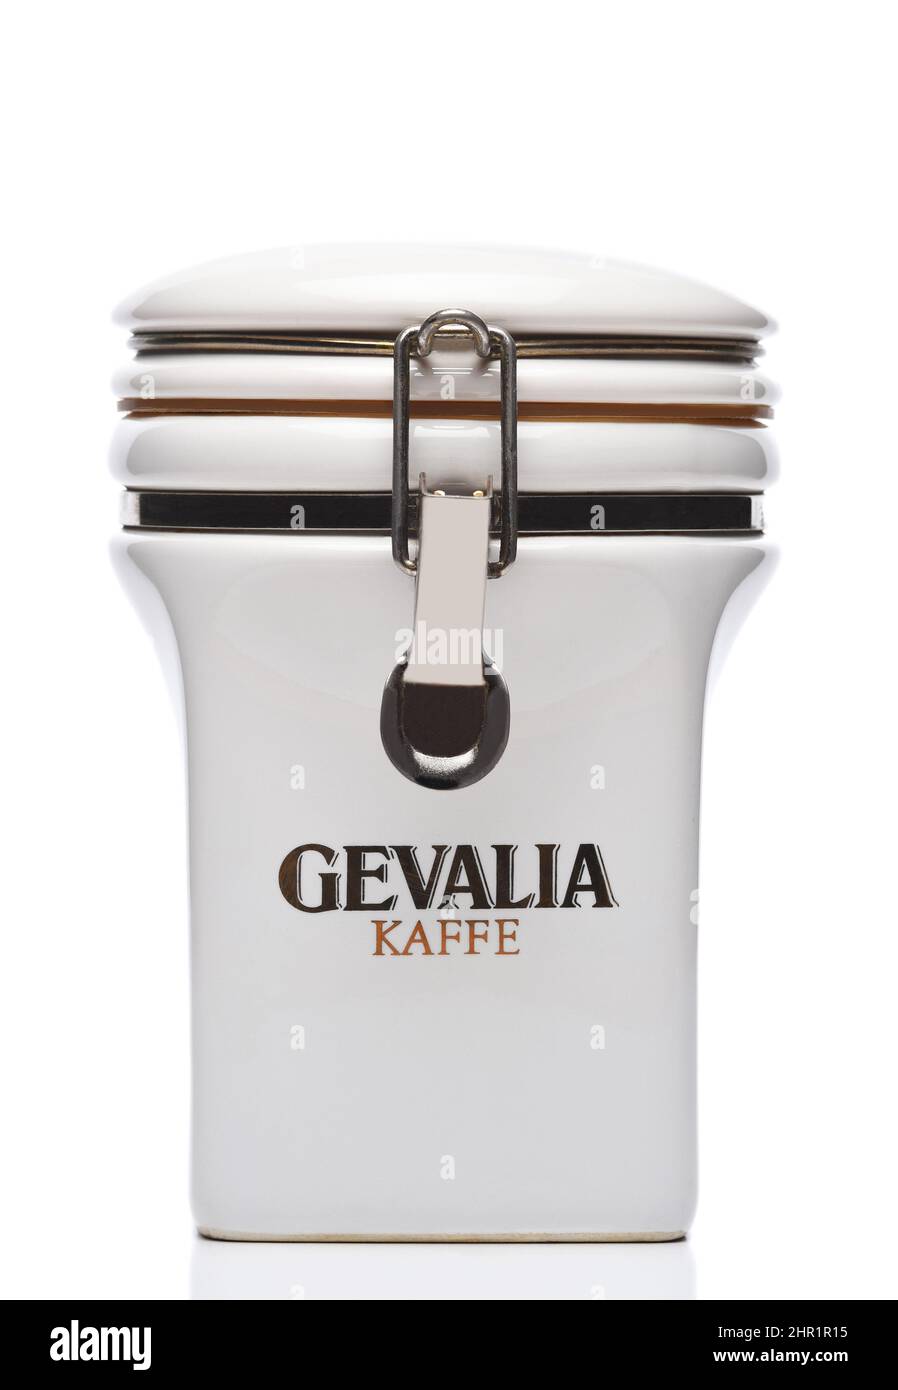 IRVINE, CALIFORNIA - 21 FEB 2022: Recipiente Gevalia Kaffe para el almacenamiento del café escandinavo. Foto de stock